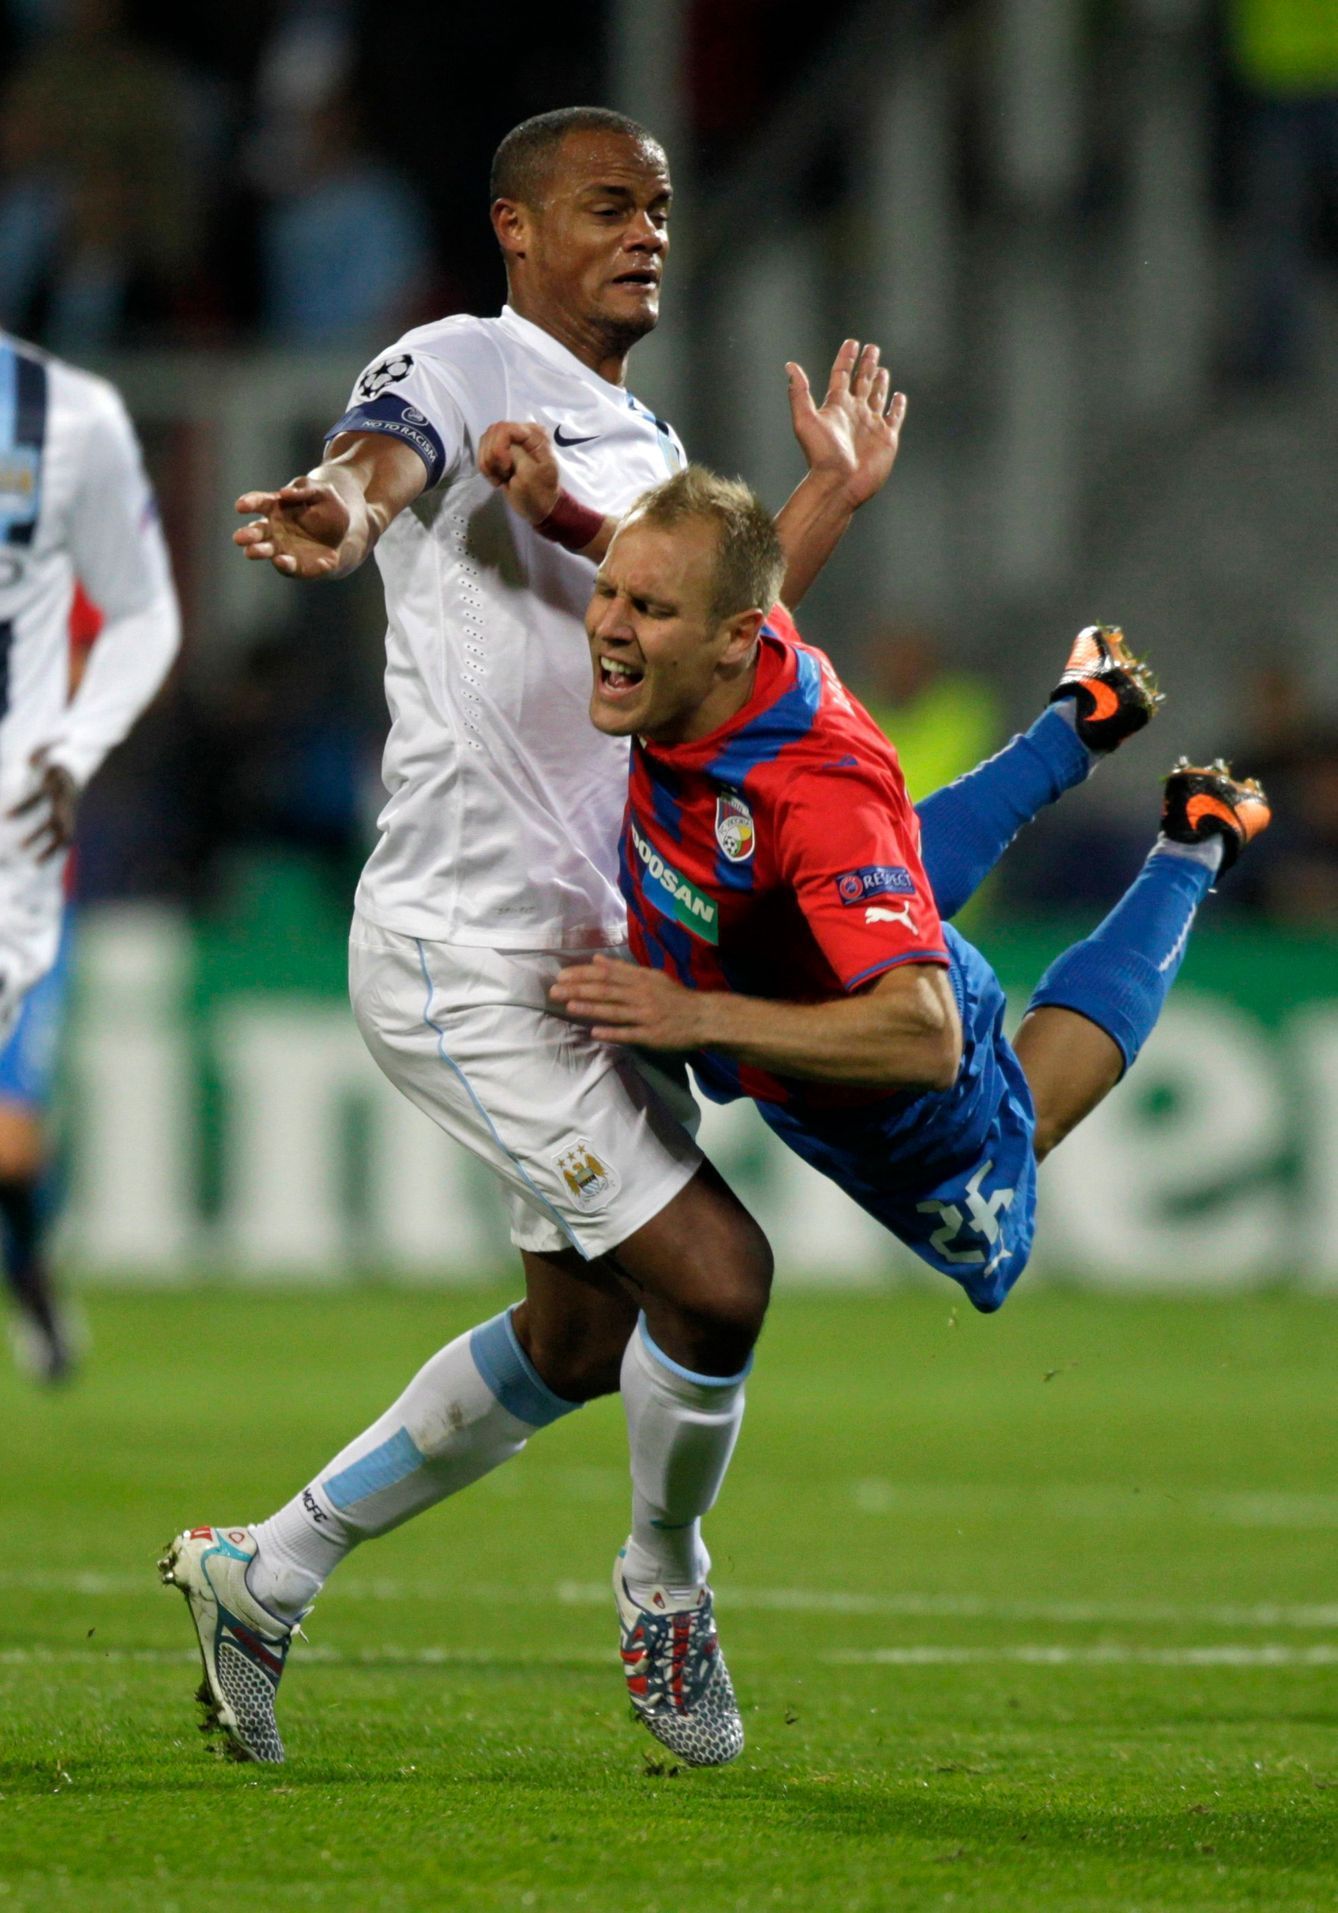 Fotbal, Plzeň - Manchester City: Daniel Kolář (vpravo) - Vincent Kompany